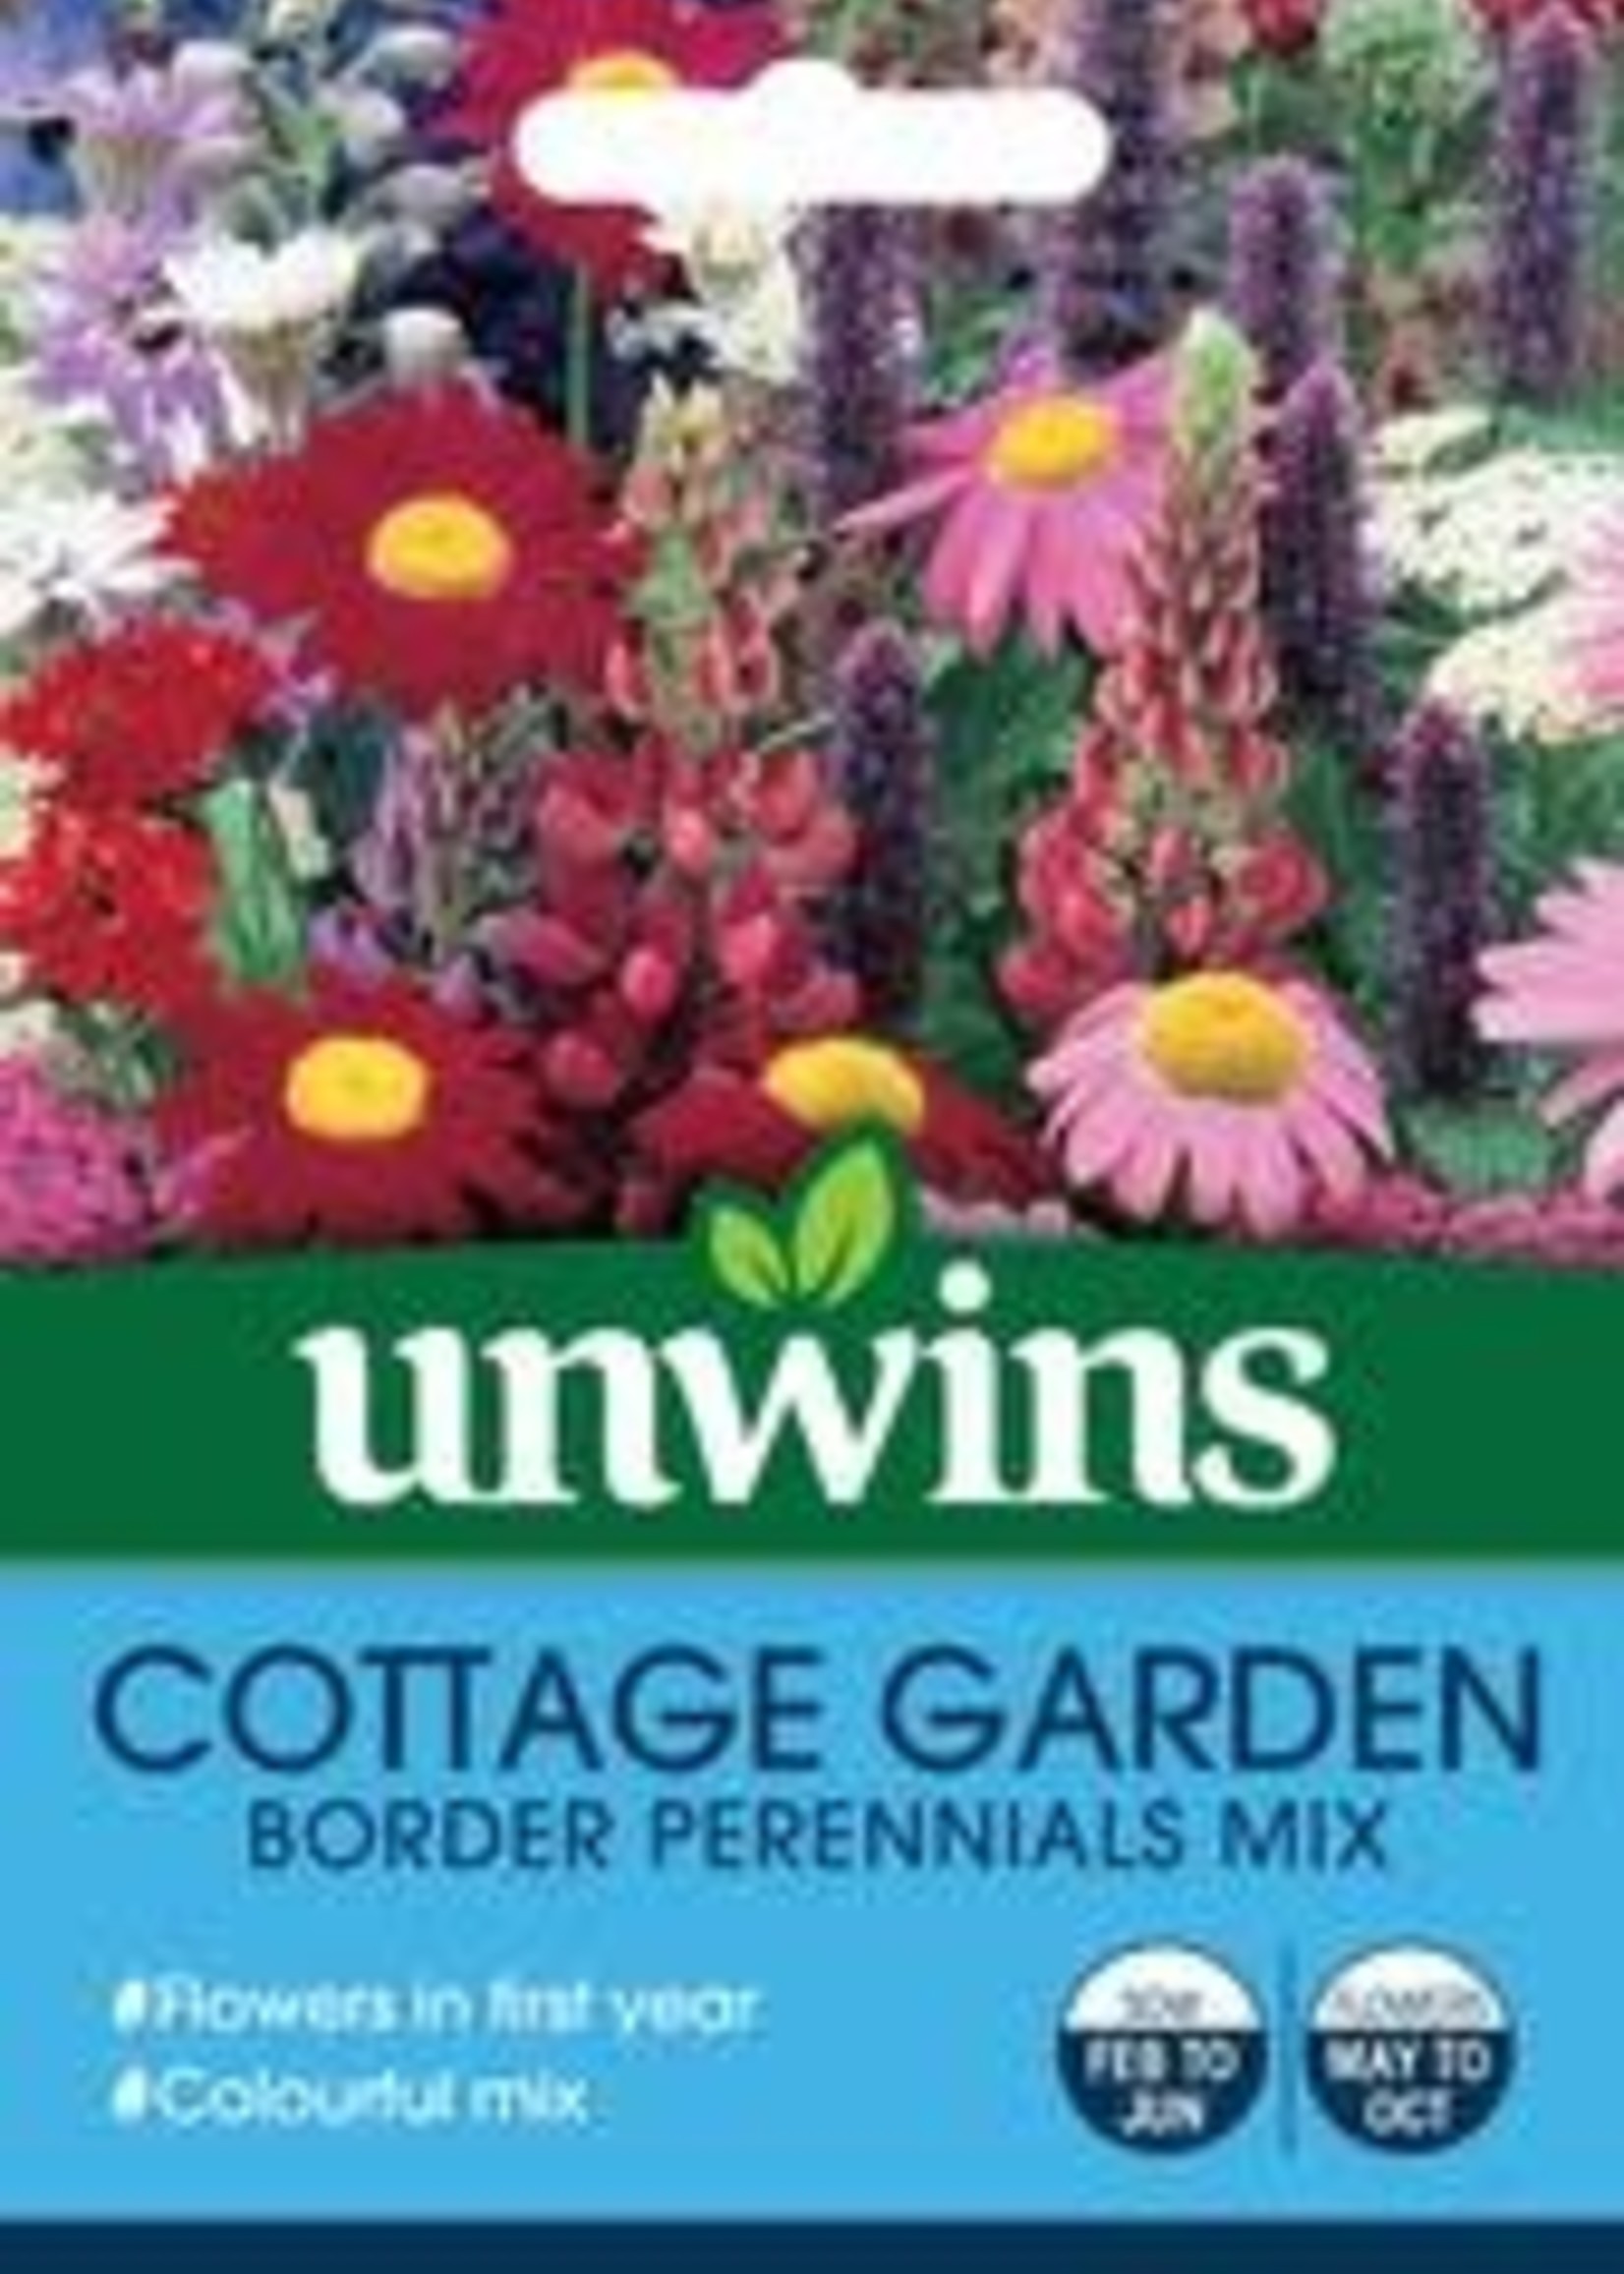 Unwins Cottage Garden - Border Perennials Mix